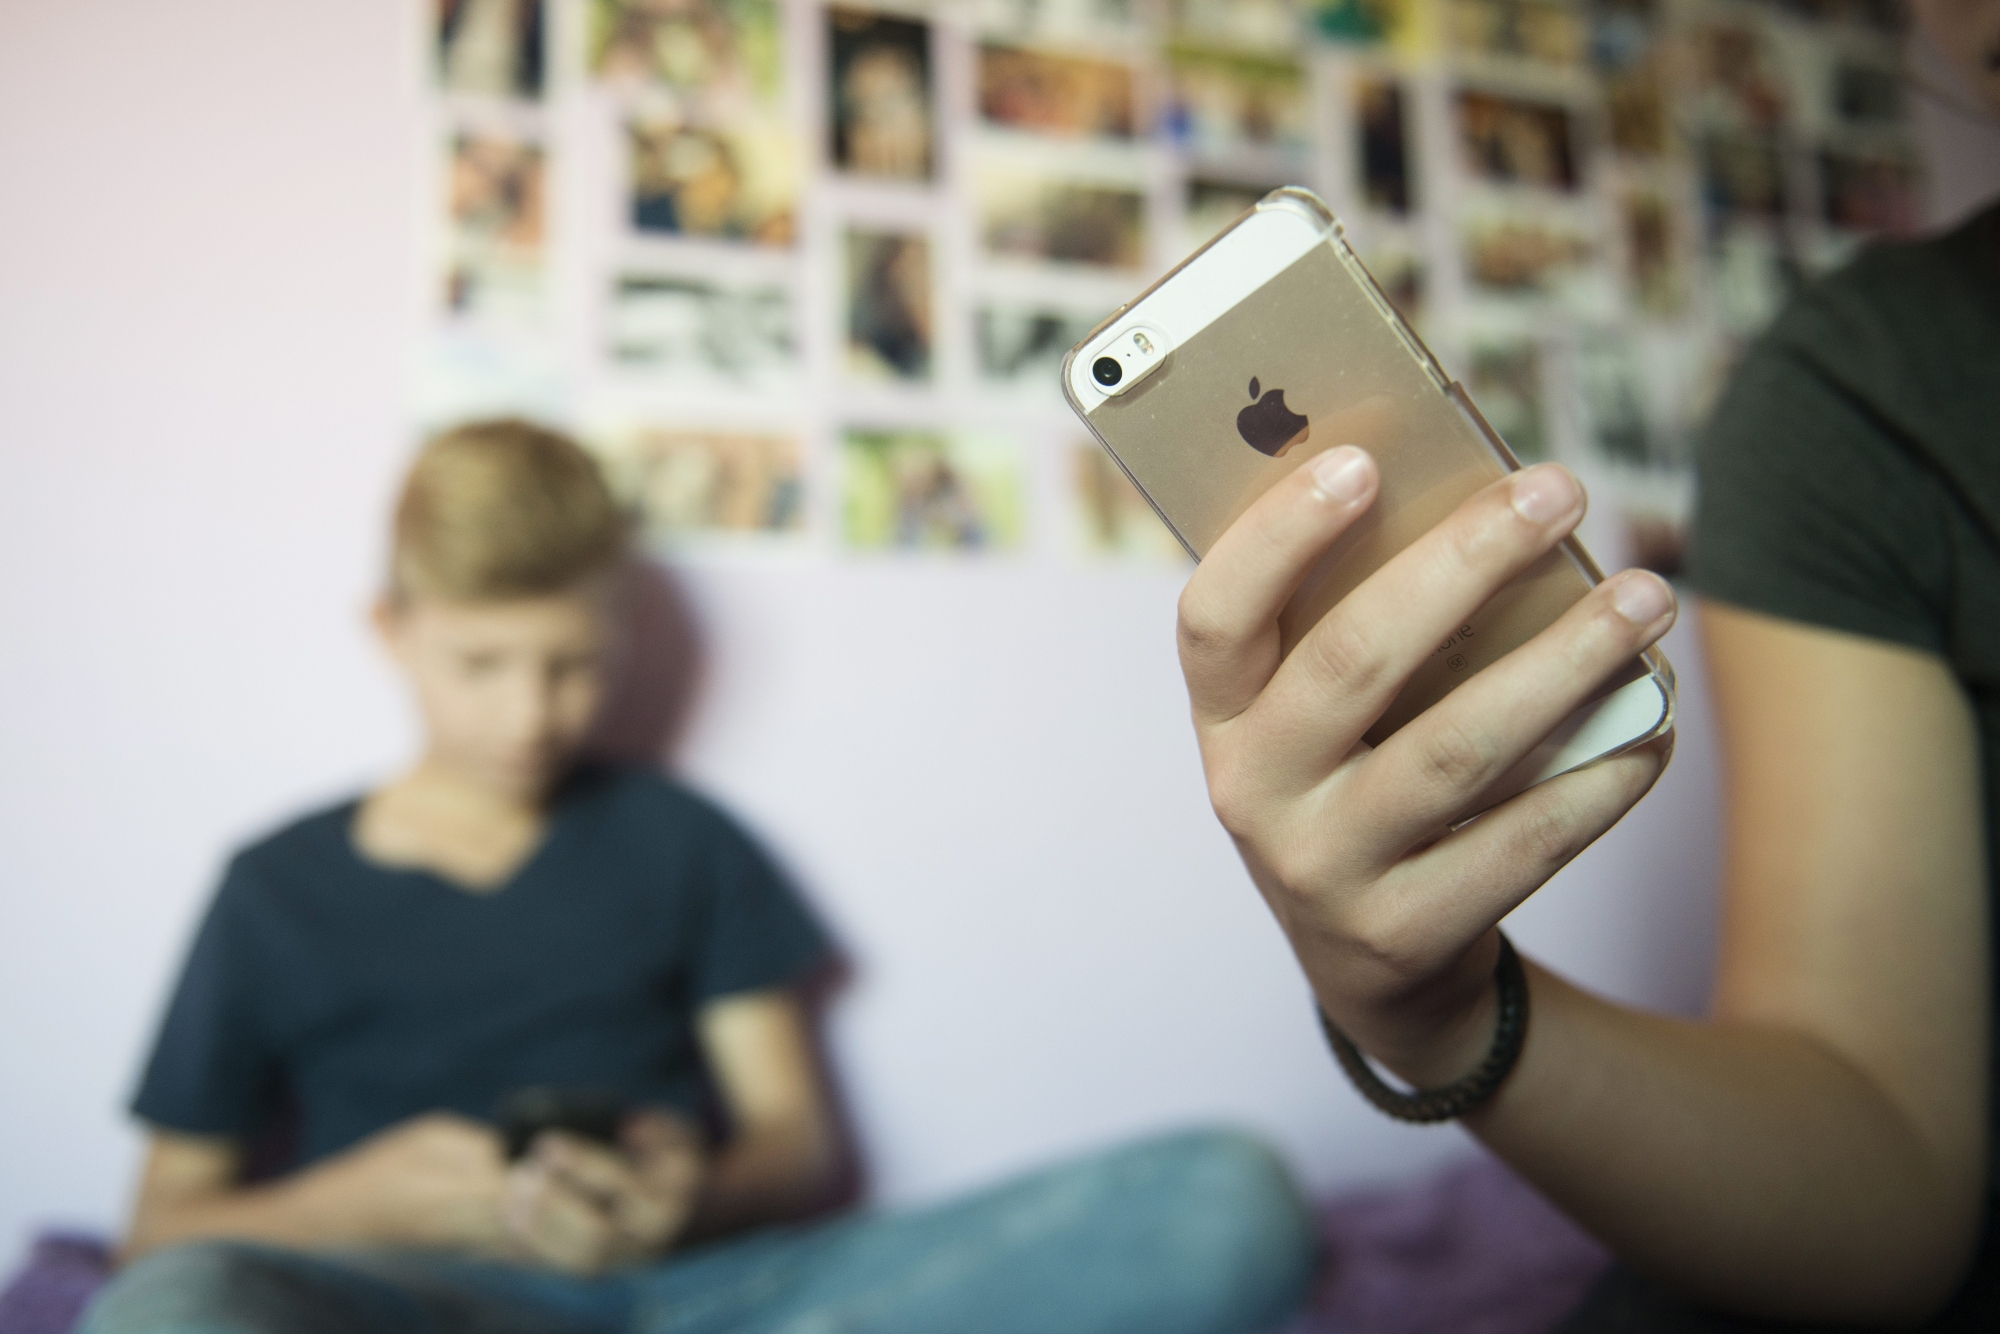 Illustration de jeunes ecrivant des SMS ou des messages texto avec leur telephone portable

Neuchatel, le 26 septembre 2016
Photo David Marchon